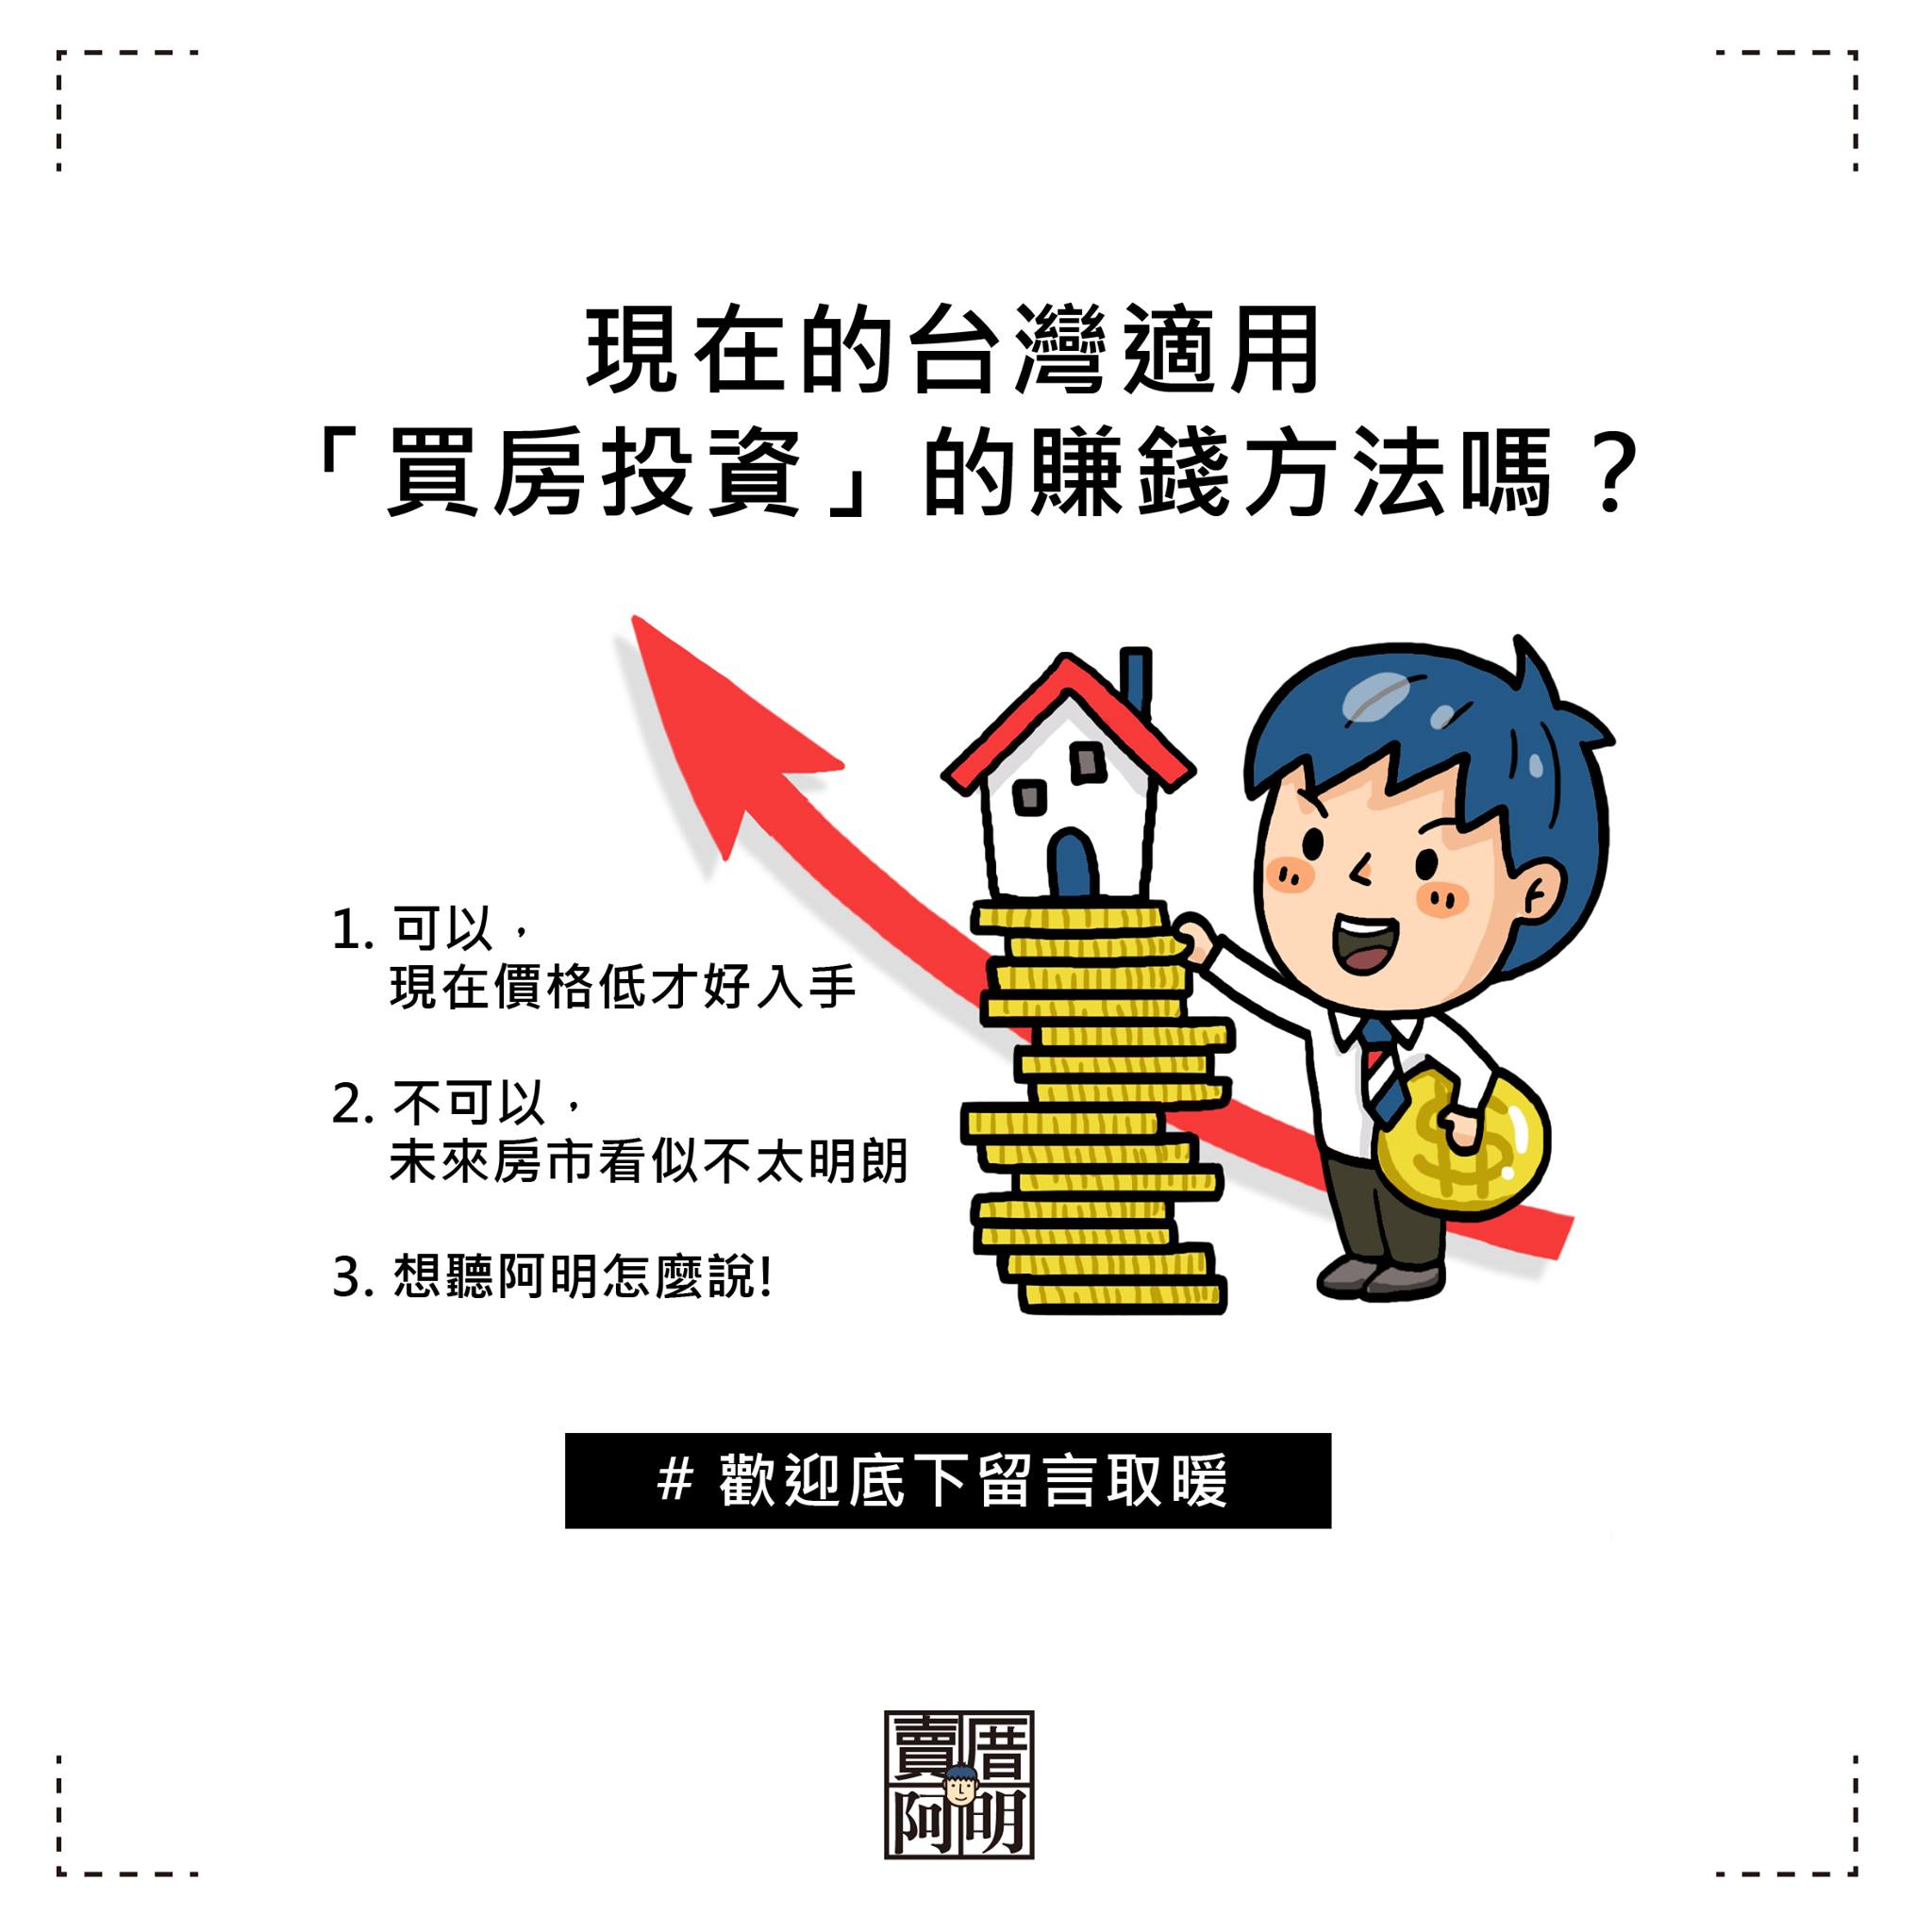 現在的台灣適用「買房投資」的賺錢方法嗎？